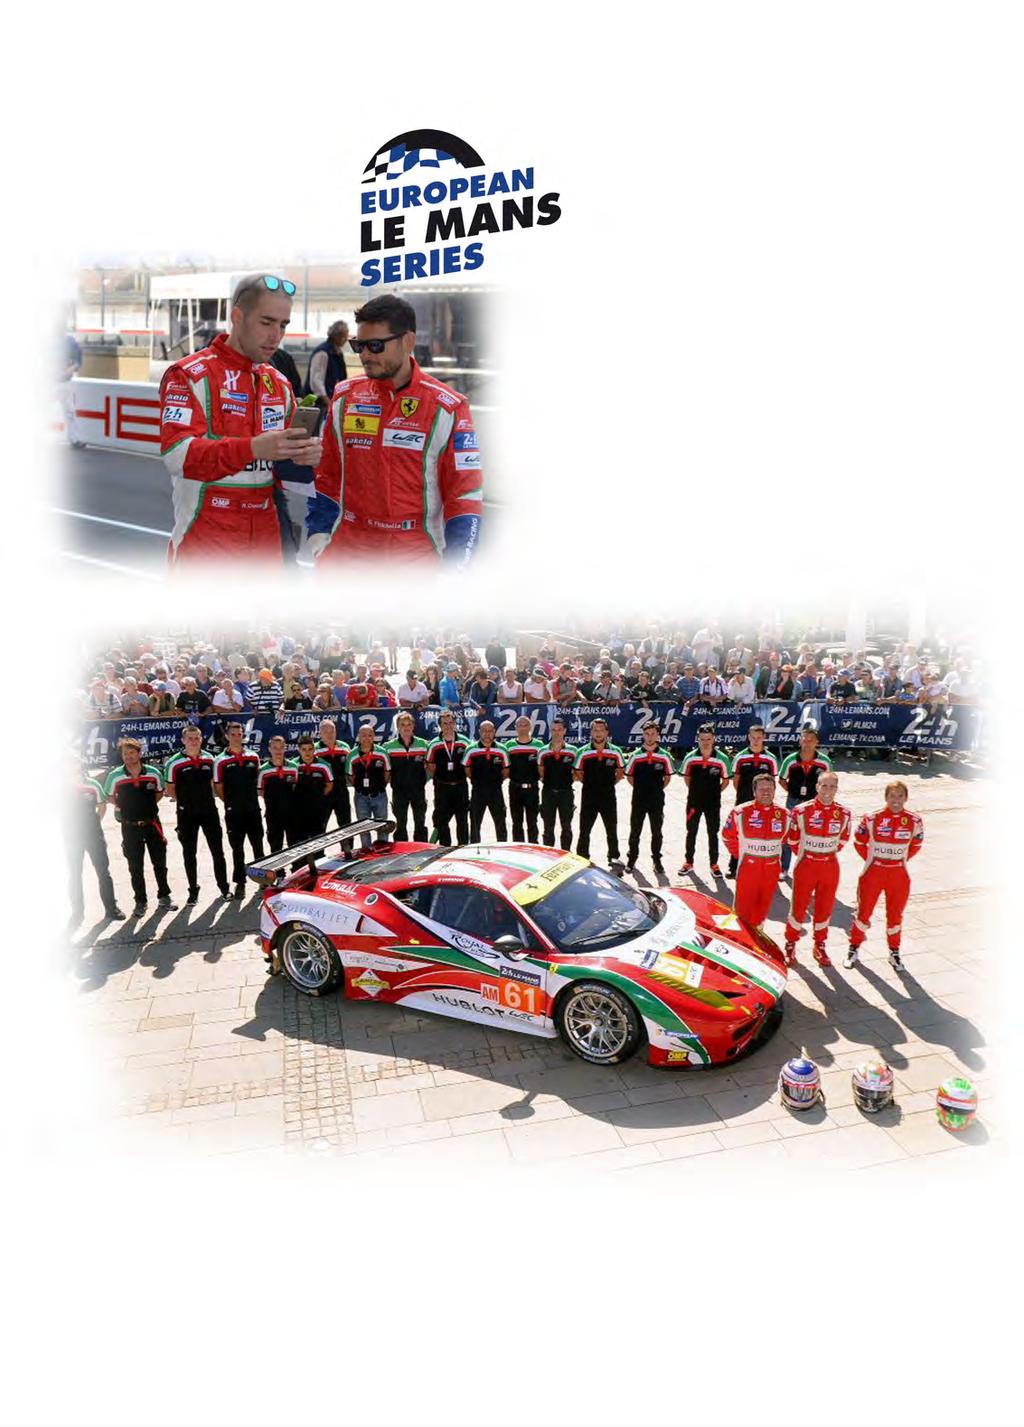 COPERTURA E VISIBILITA MEDIATICA 24 ORE LE MANS EDIZIONE 2015: - 263.500 spettatori presenti a Le Mans durante tutta la durata dell evento (263.